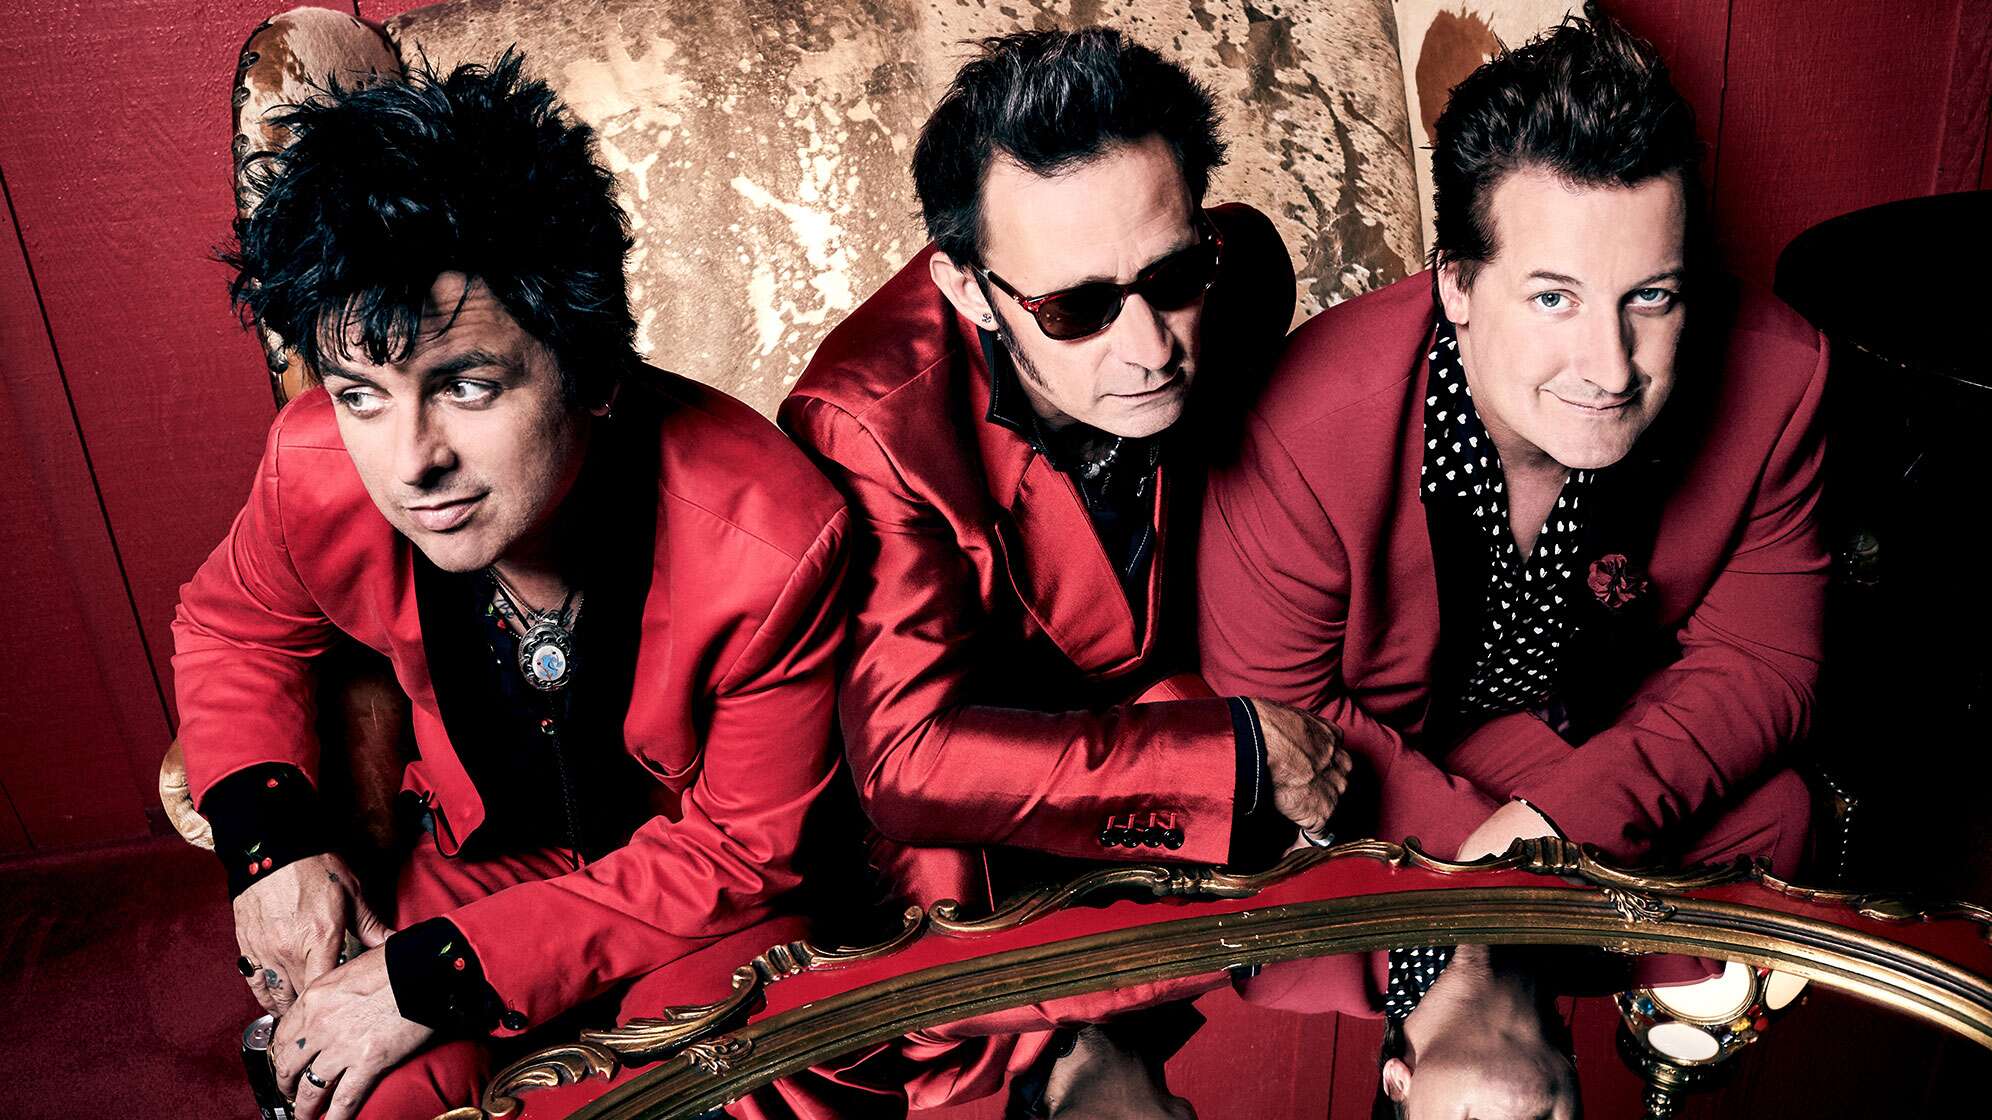 Ein Pressefoto der Band Green Day - von links nach rechts: Billie Joe Armstrong, Mike Dirnt und Tré Cool!